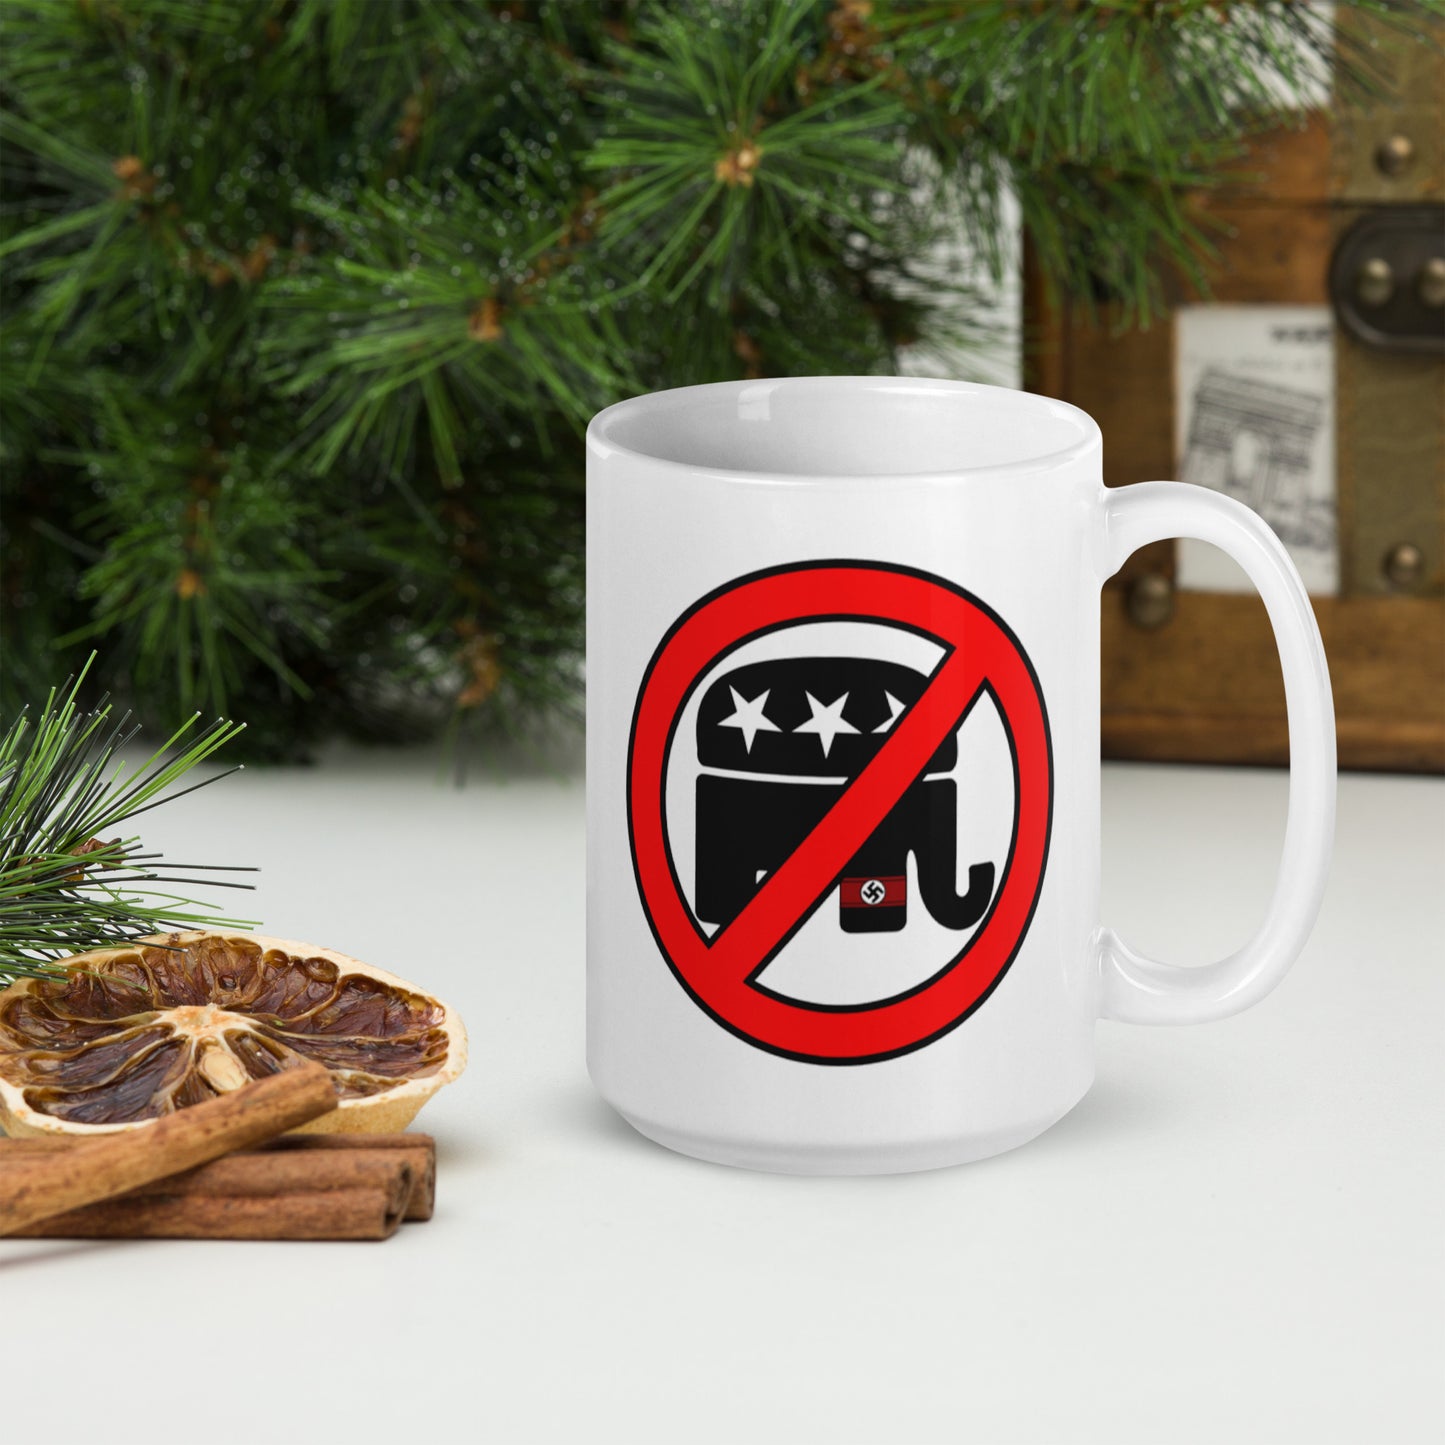 Stop the GOP Mug